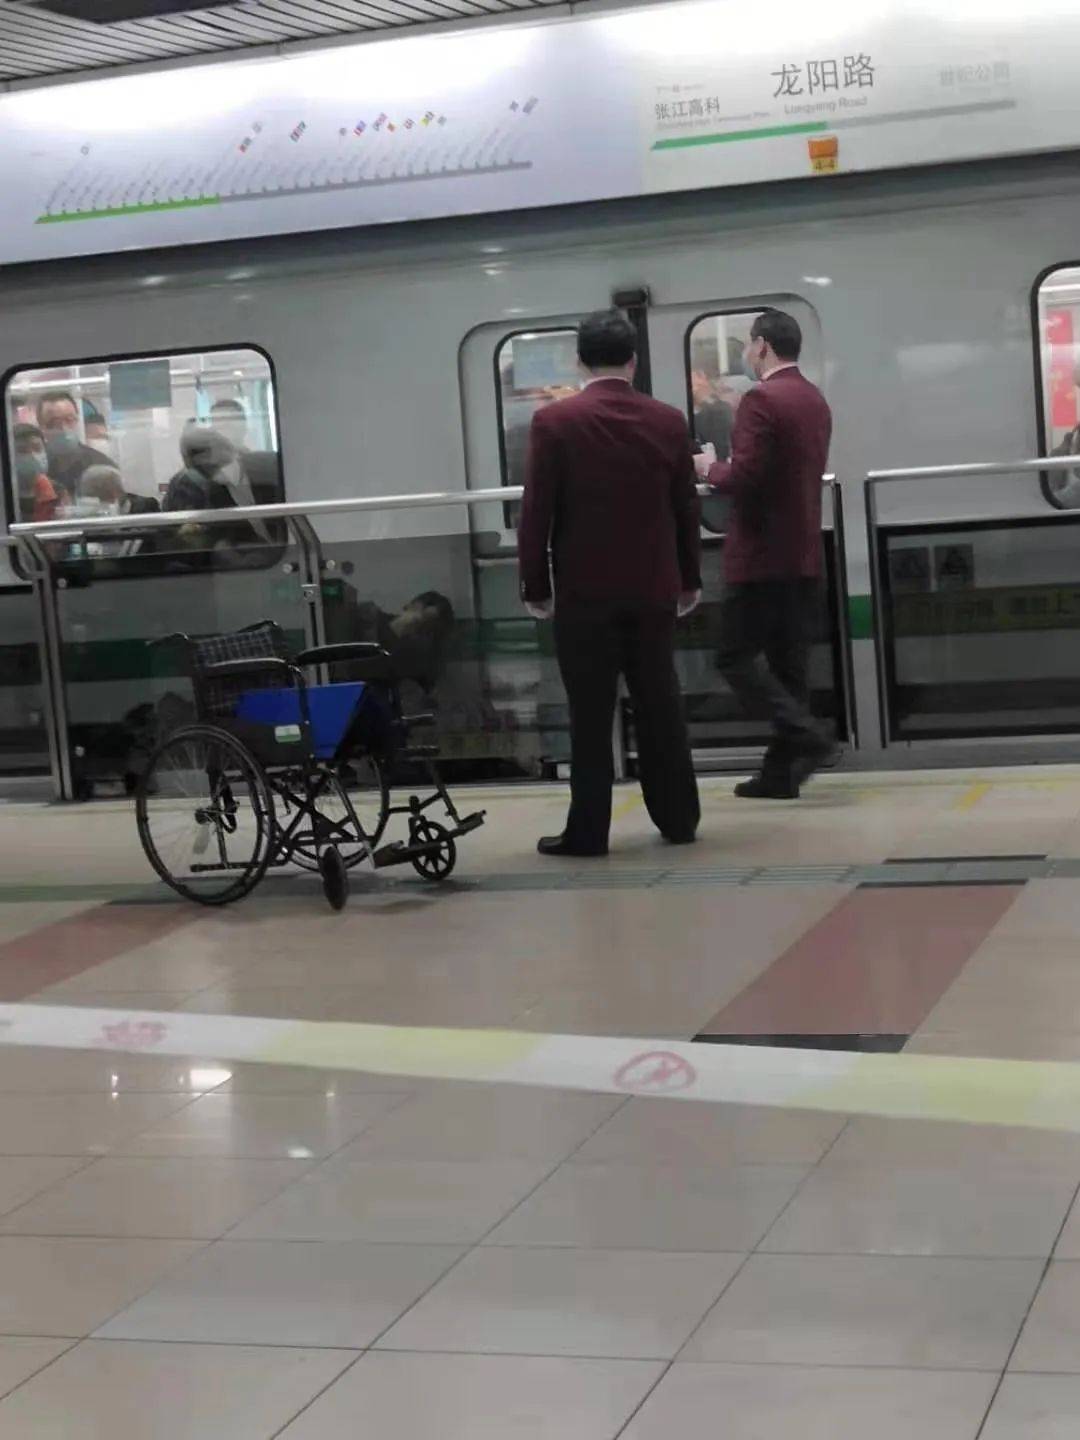 上海地铁中年乘客跳轨自杀,每一个成年人,都是在负重前行!